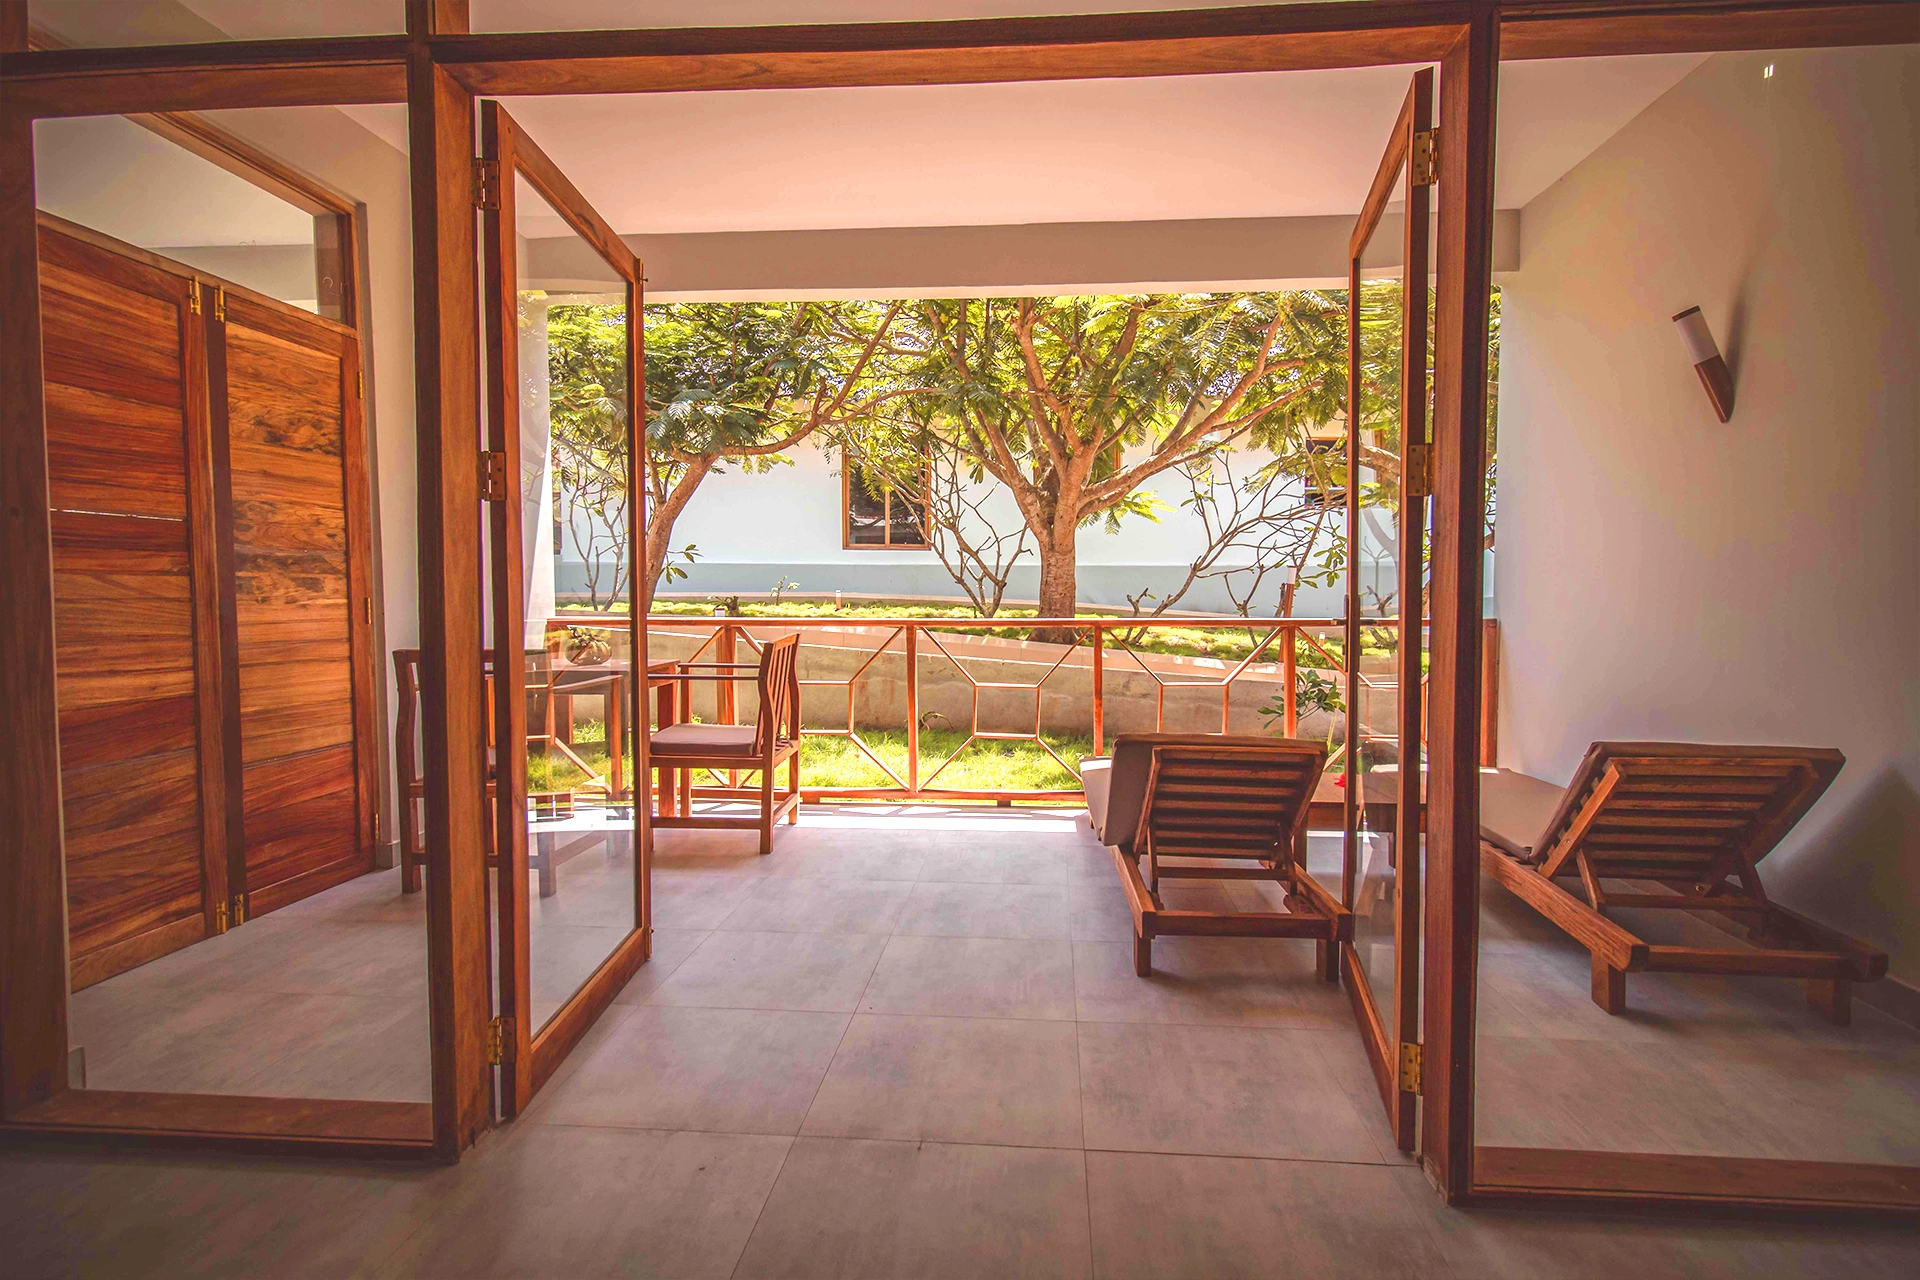 Widok z pokoju hotelowego na taras wyposażony w leżaki i stół z krzesłami, z egzotyczną, zanzibarską przyrodą w tle.